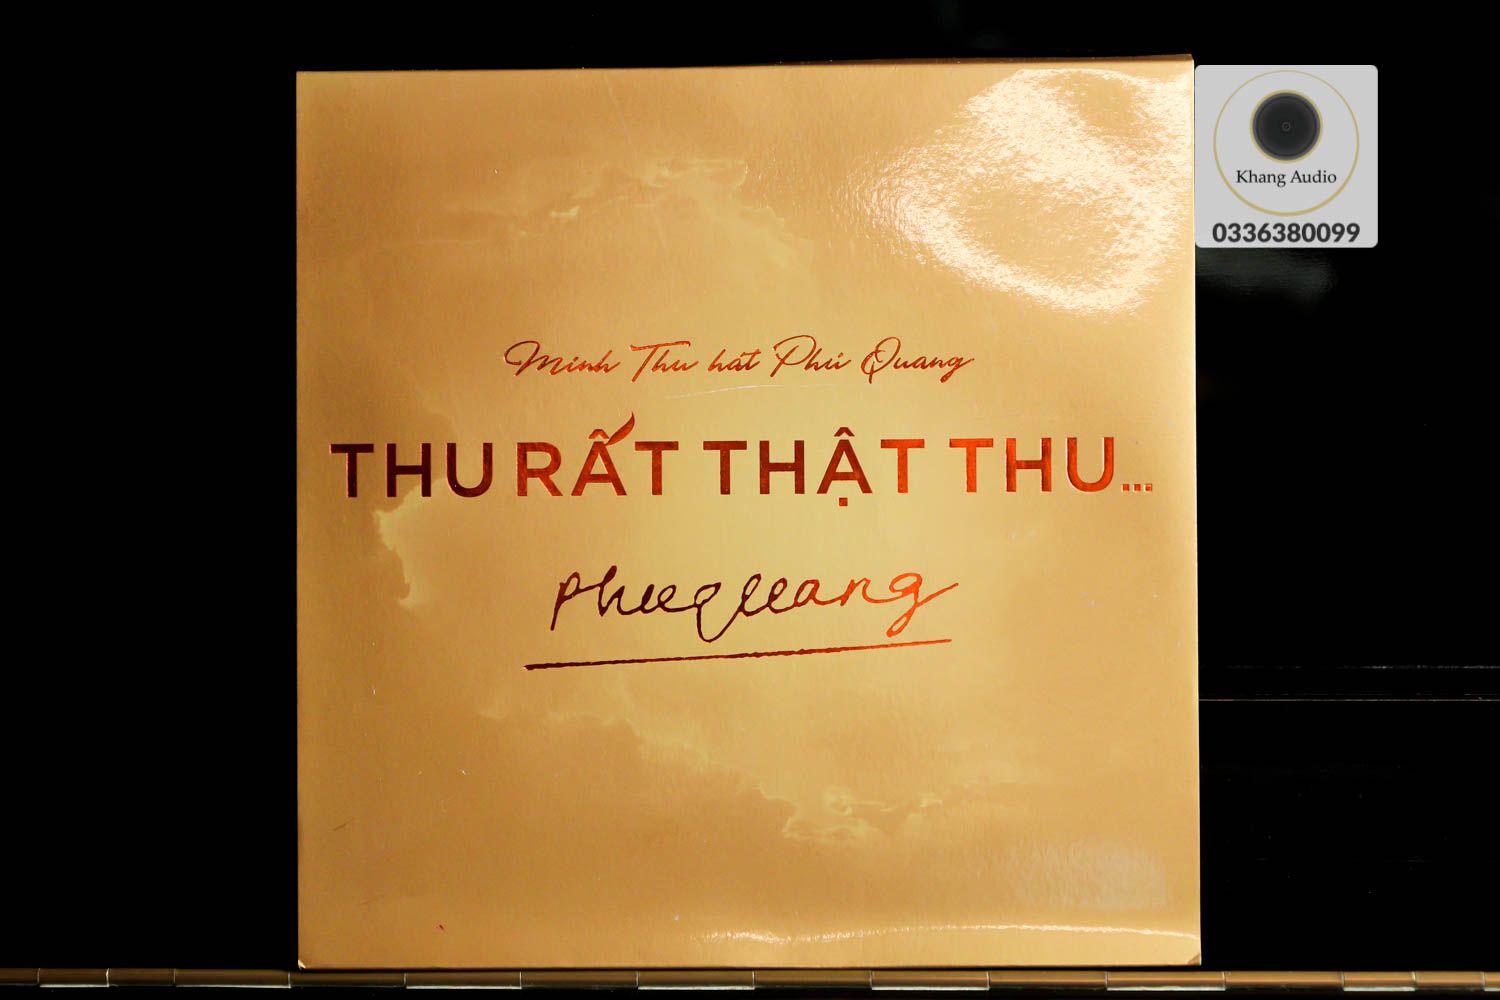 Thu Rất Thật Thu - Minh Thu Hát Phú Quang Khang Audio 0336380099